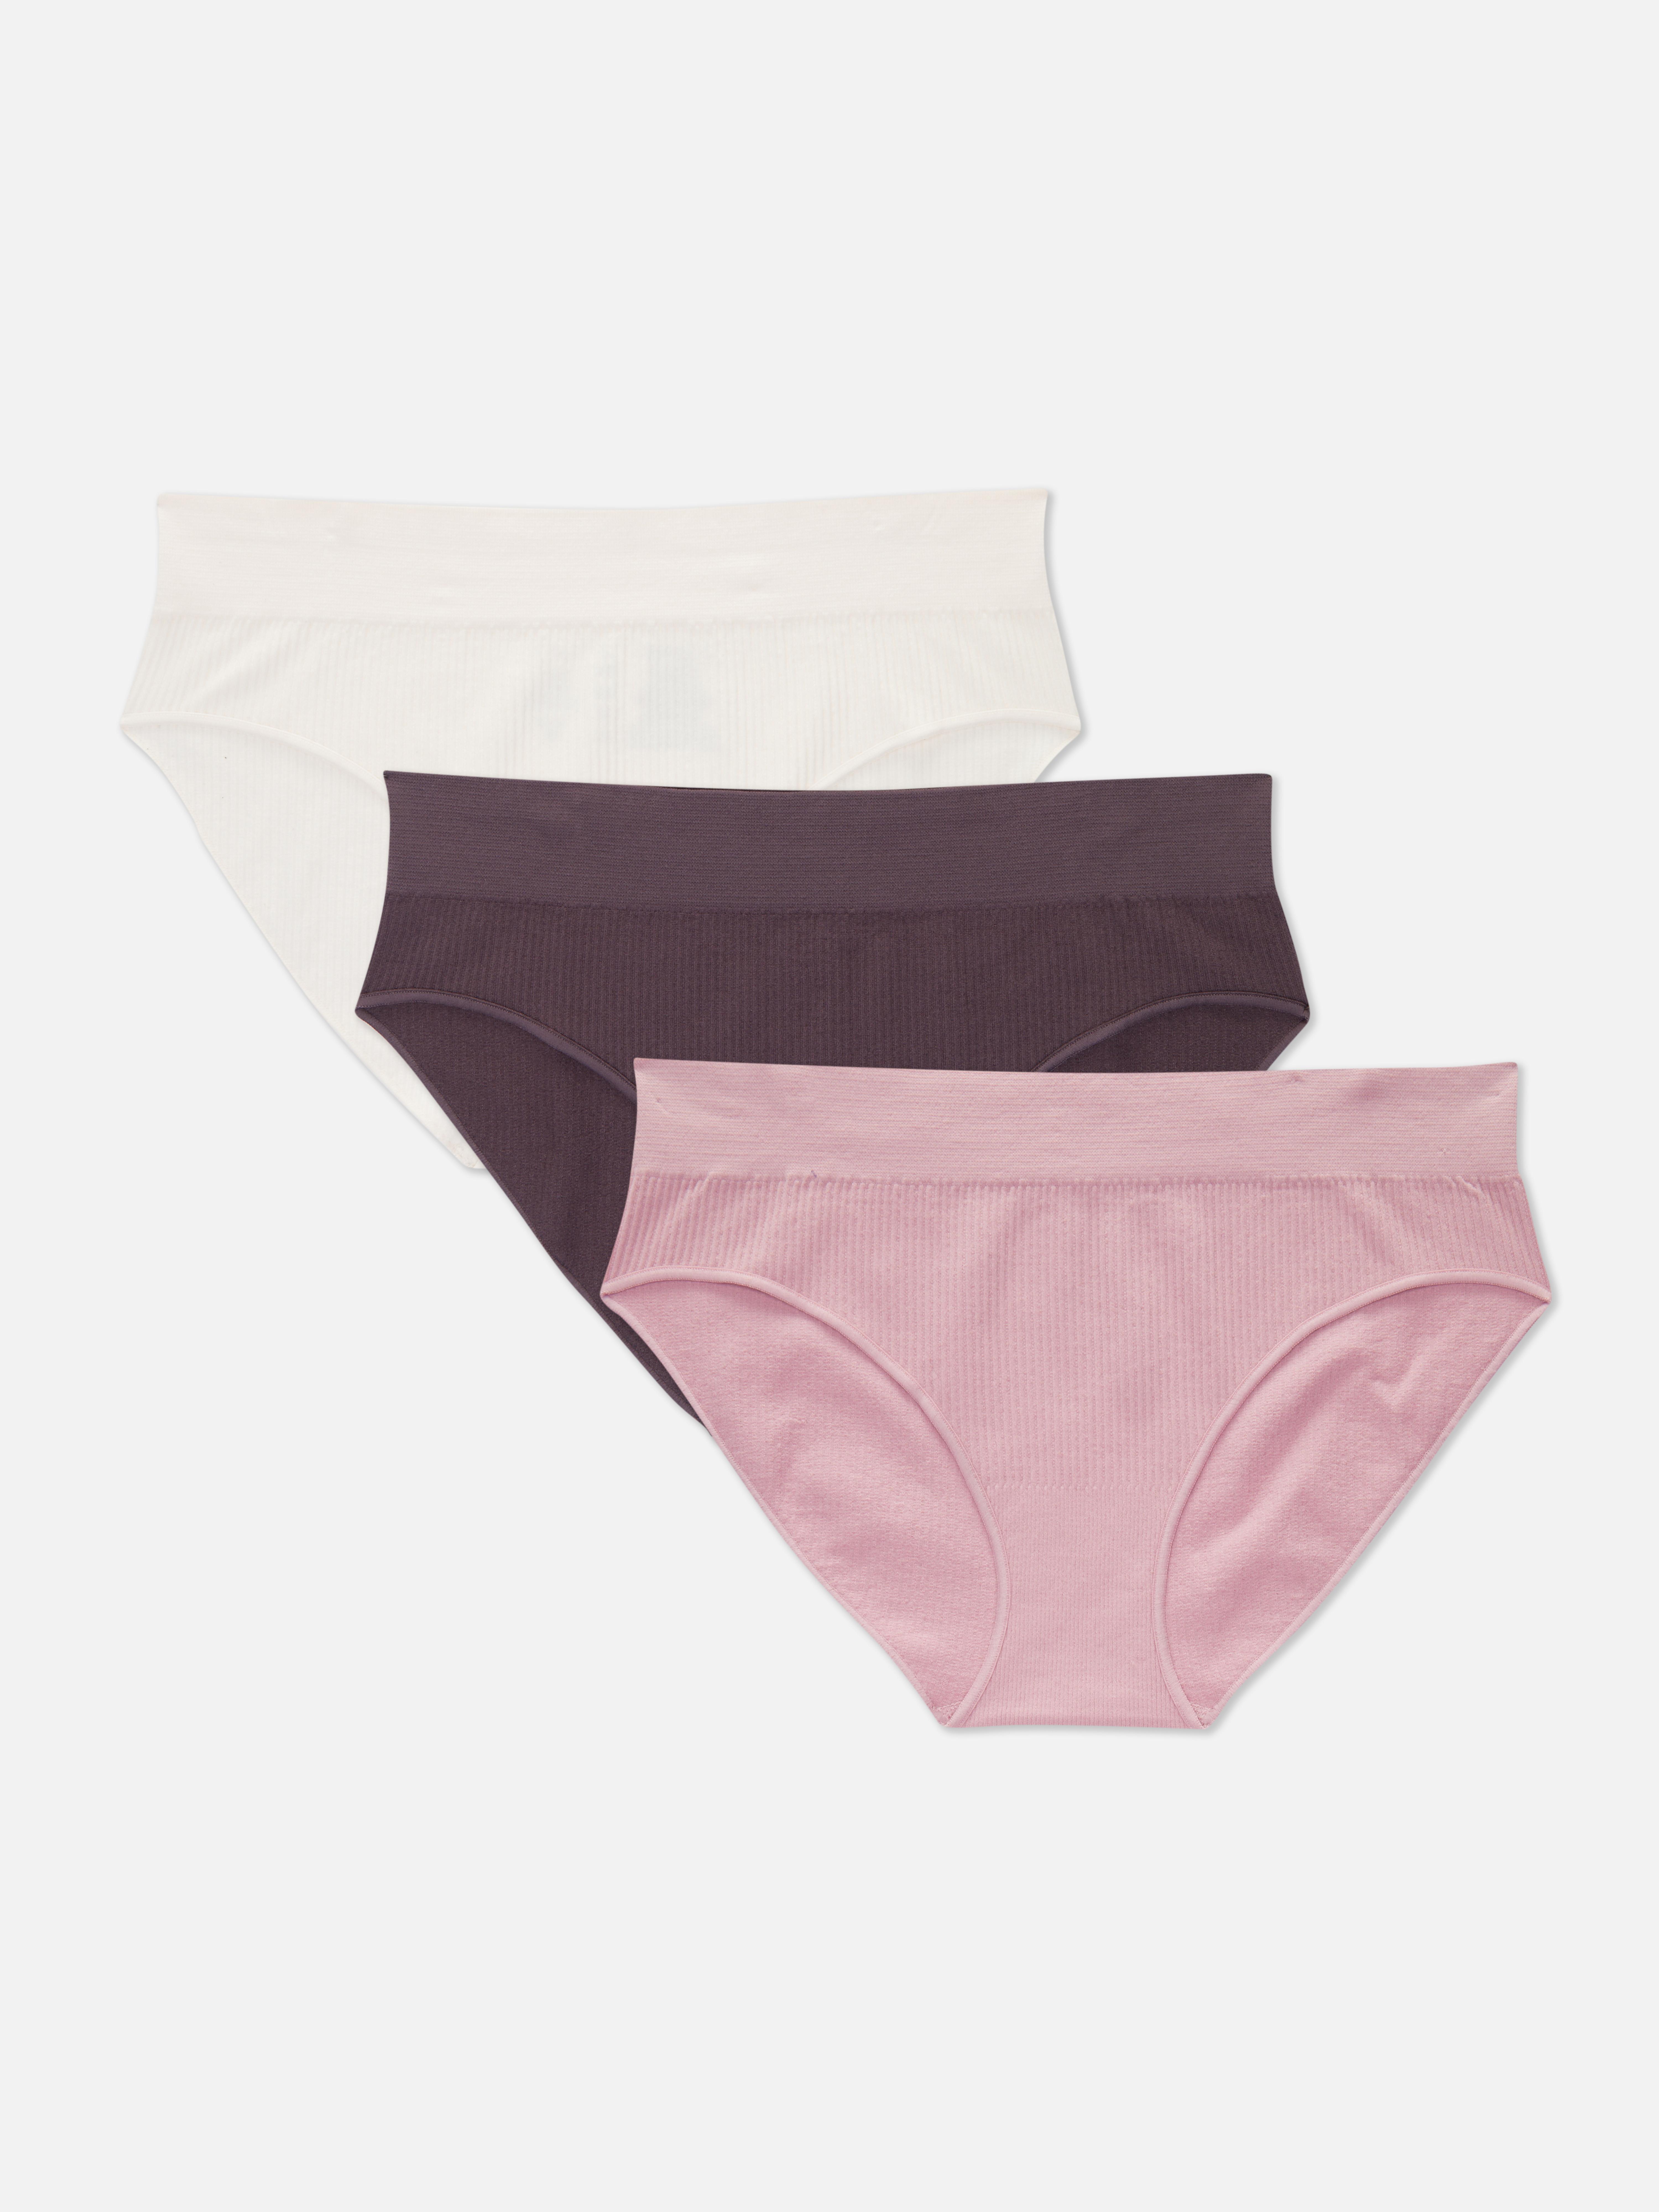 Zldhxyf Primark Online Shop Women's Seamless Beauty Back Underwear